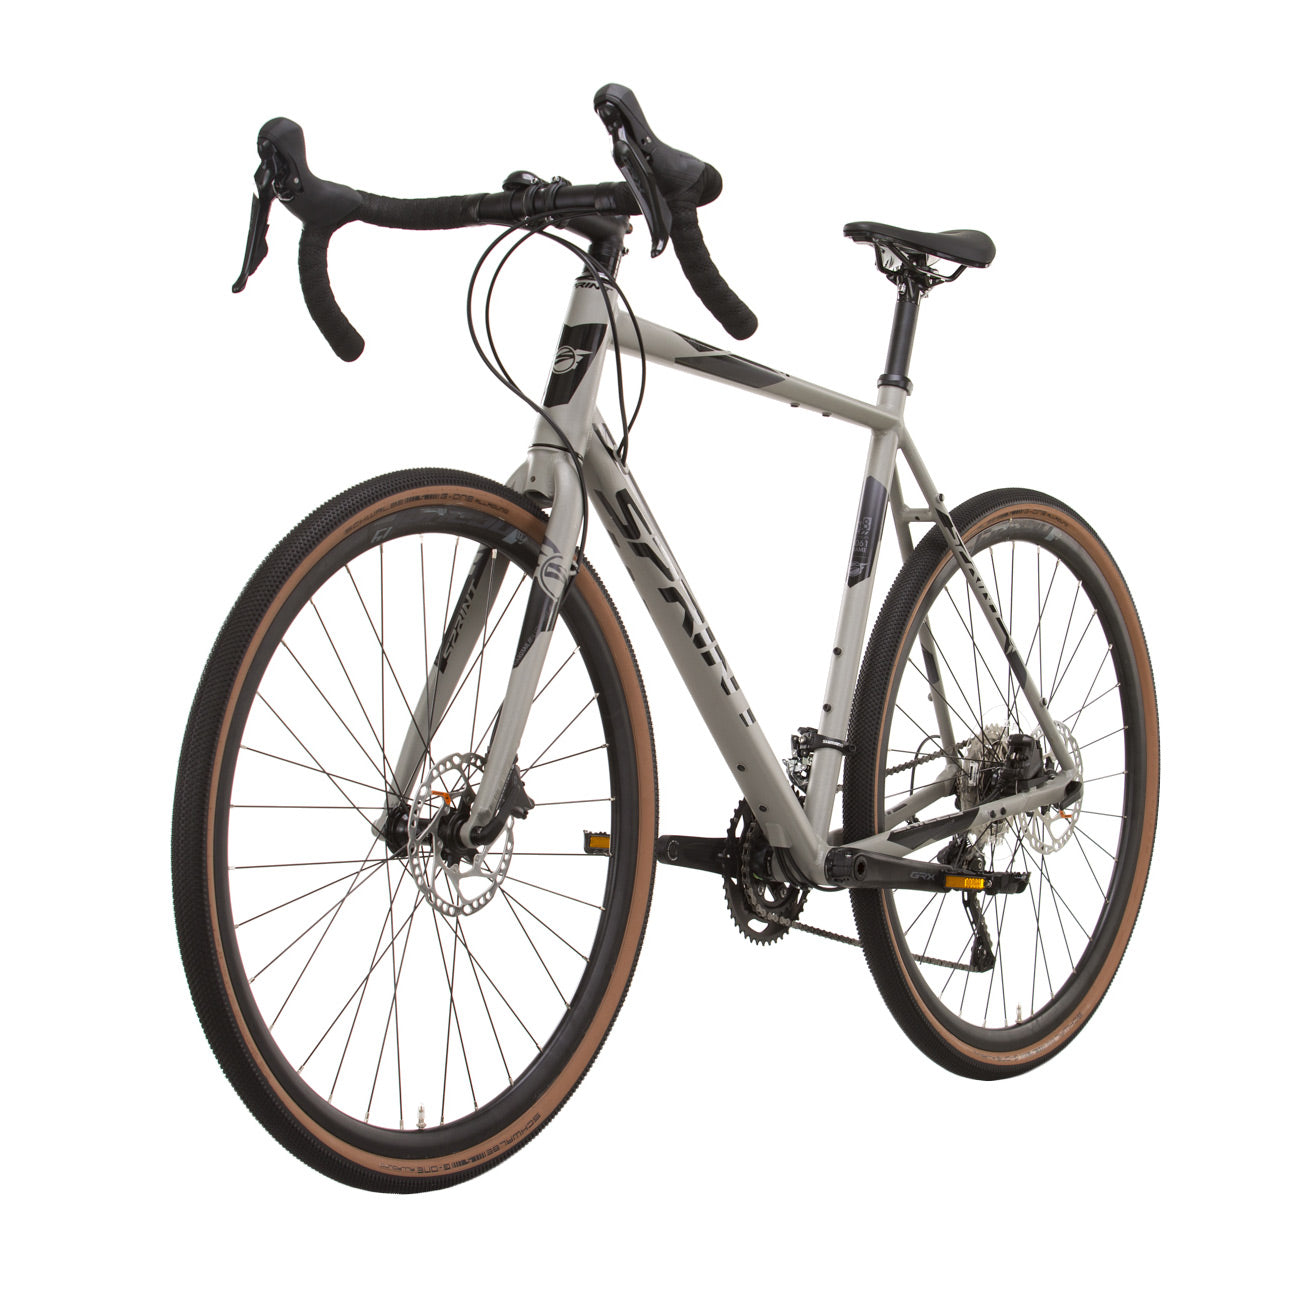 herren-gravel-bike-fahrrad-whister-shimano-grx-400-2-9-gang-52-56-cm-schwarz-grau-4